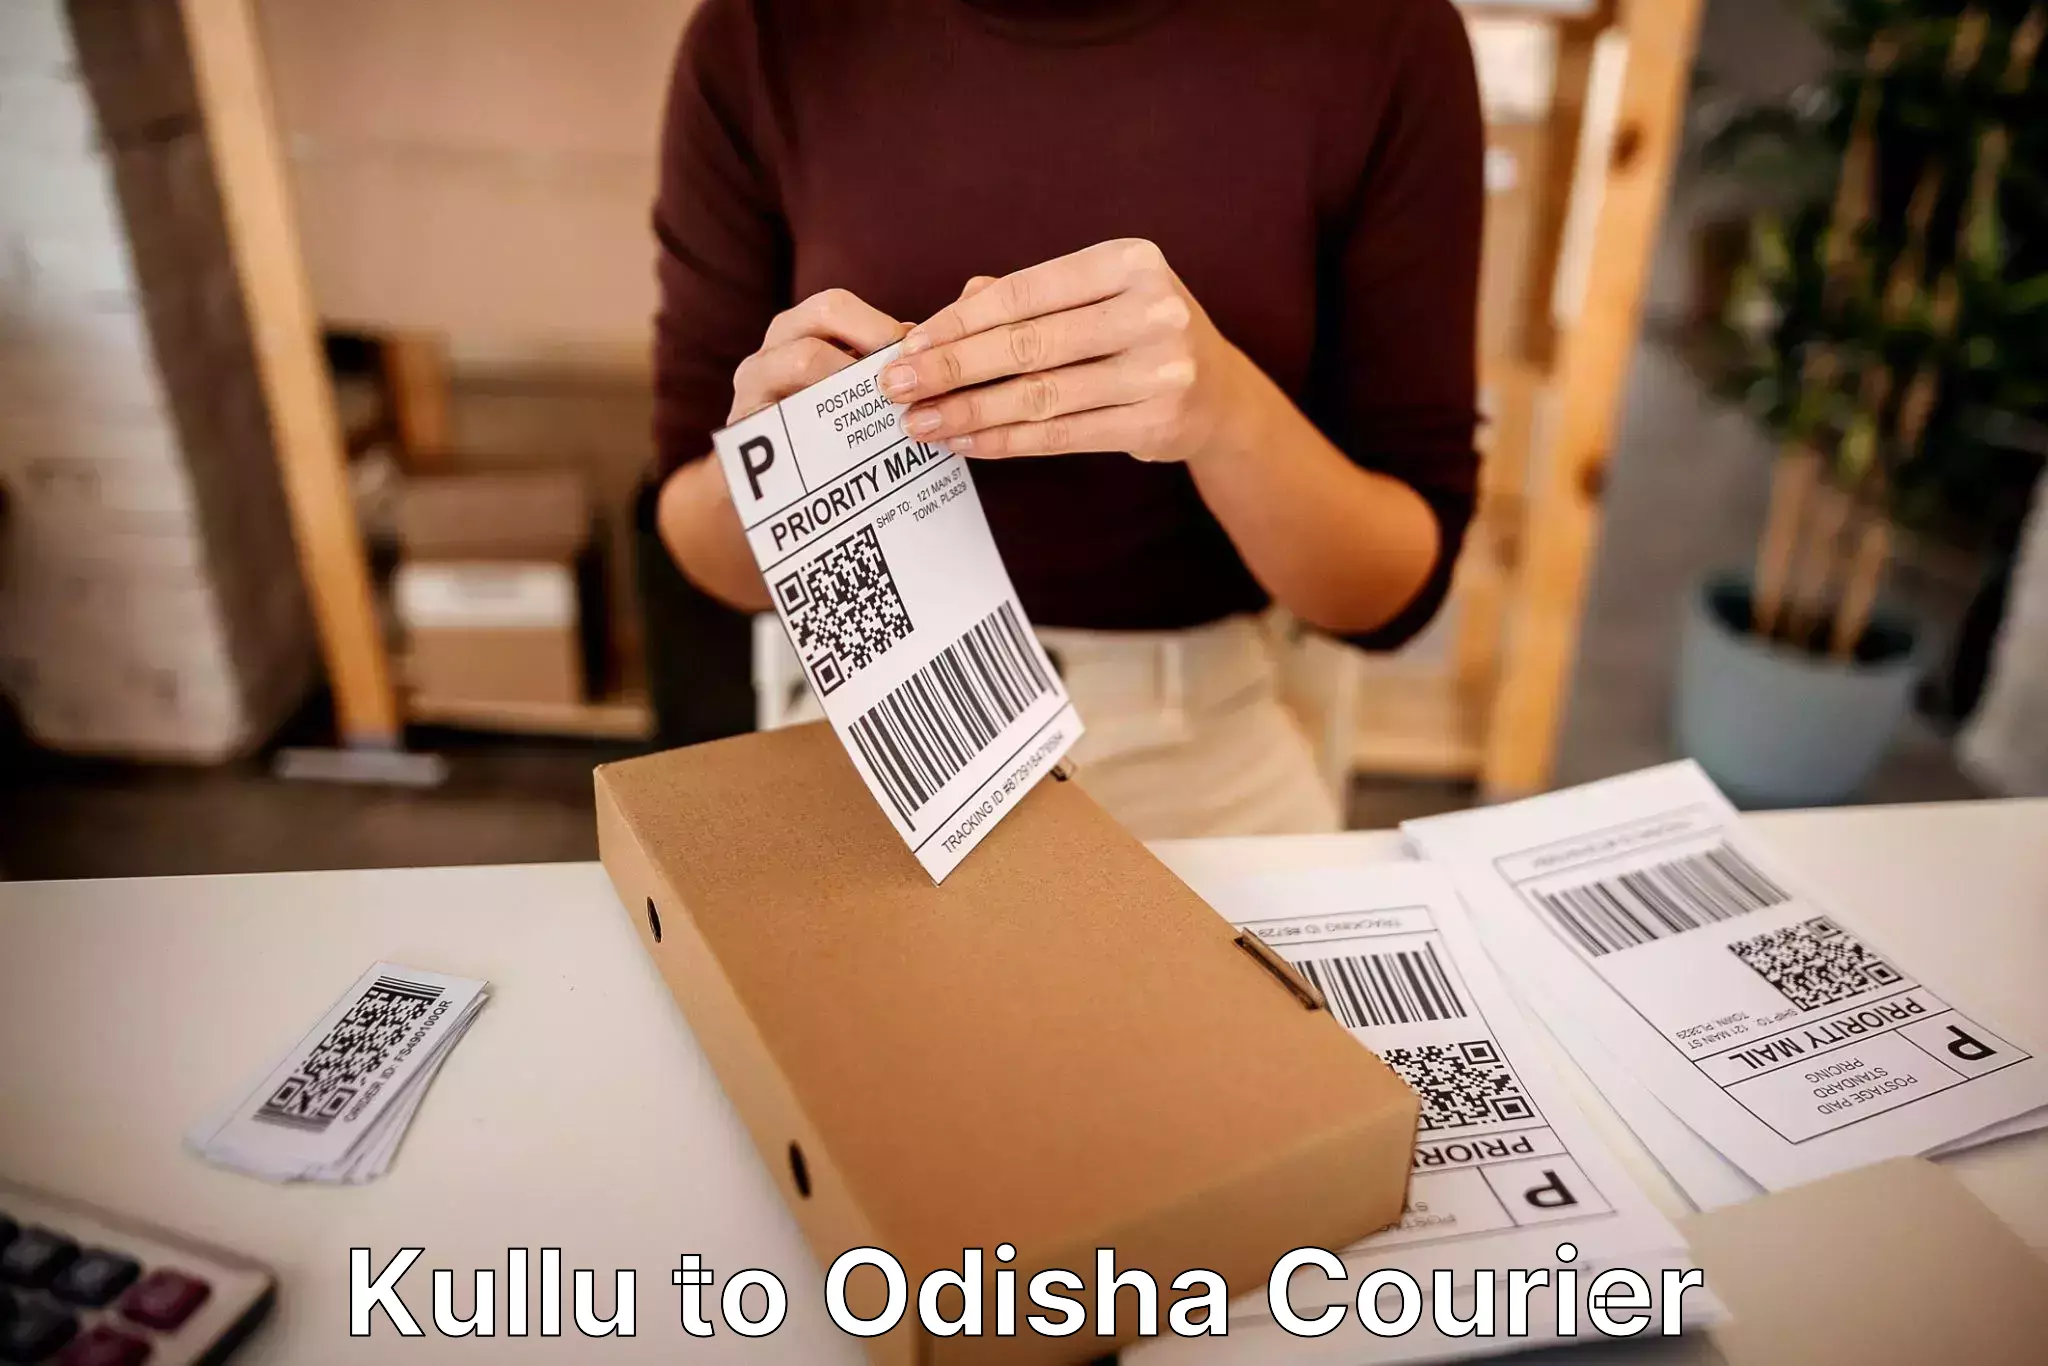 Furniture moving experts Kullu to Odisha